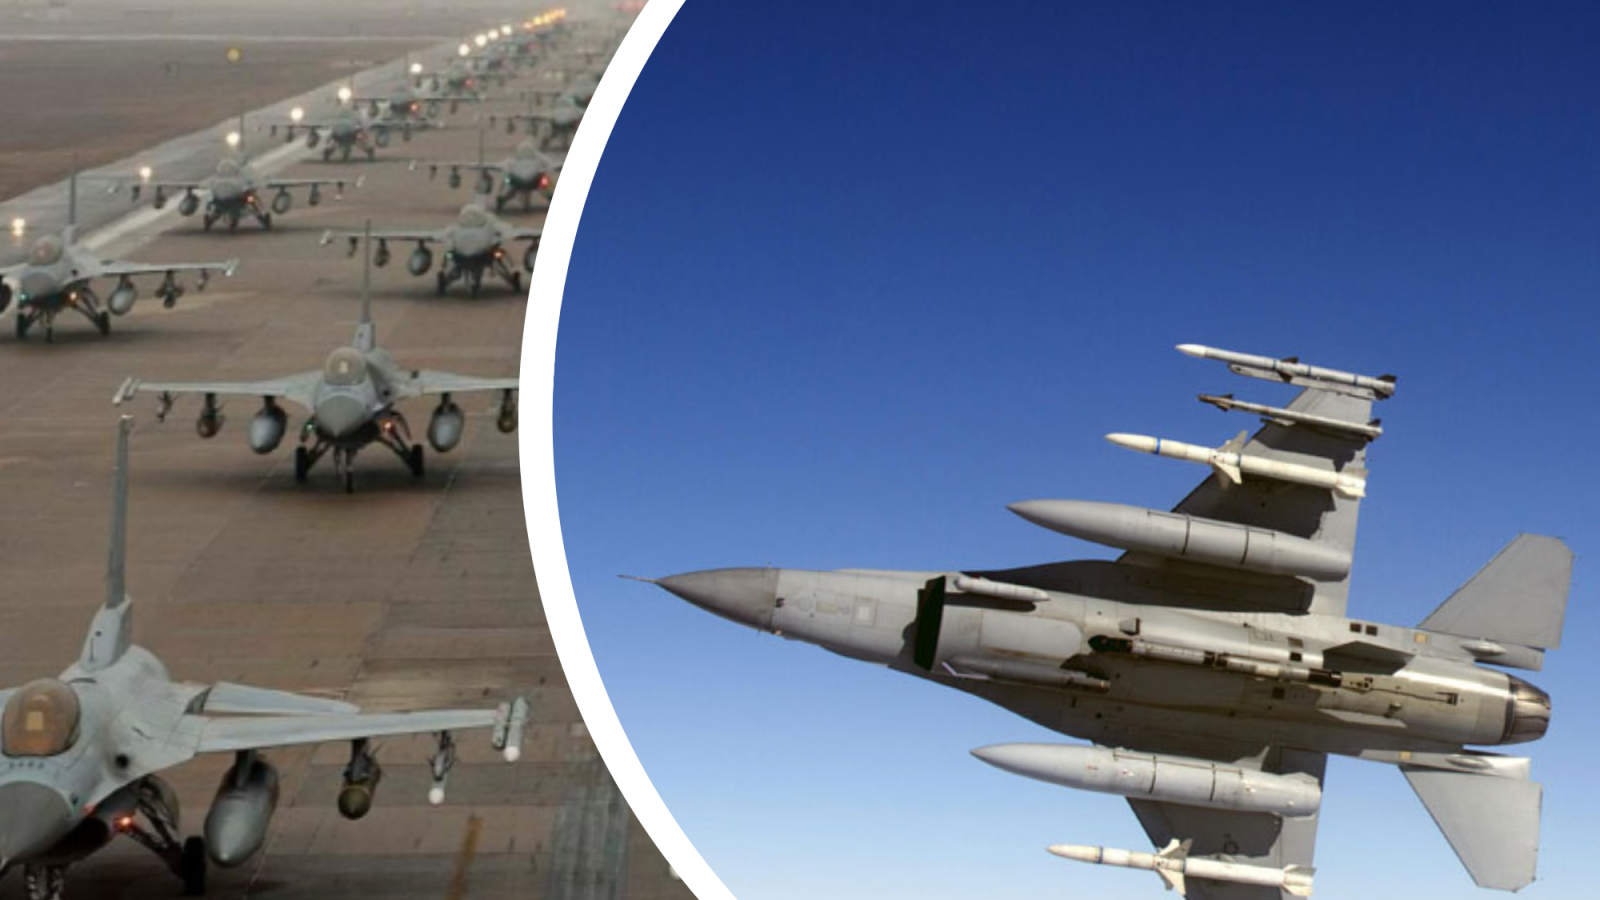 Коалиция F-16 и еще больше ПВО: итоги встречи союзников в формате «Рамштайн»